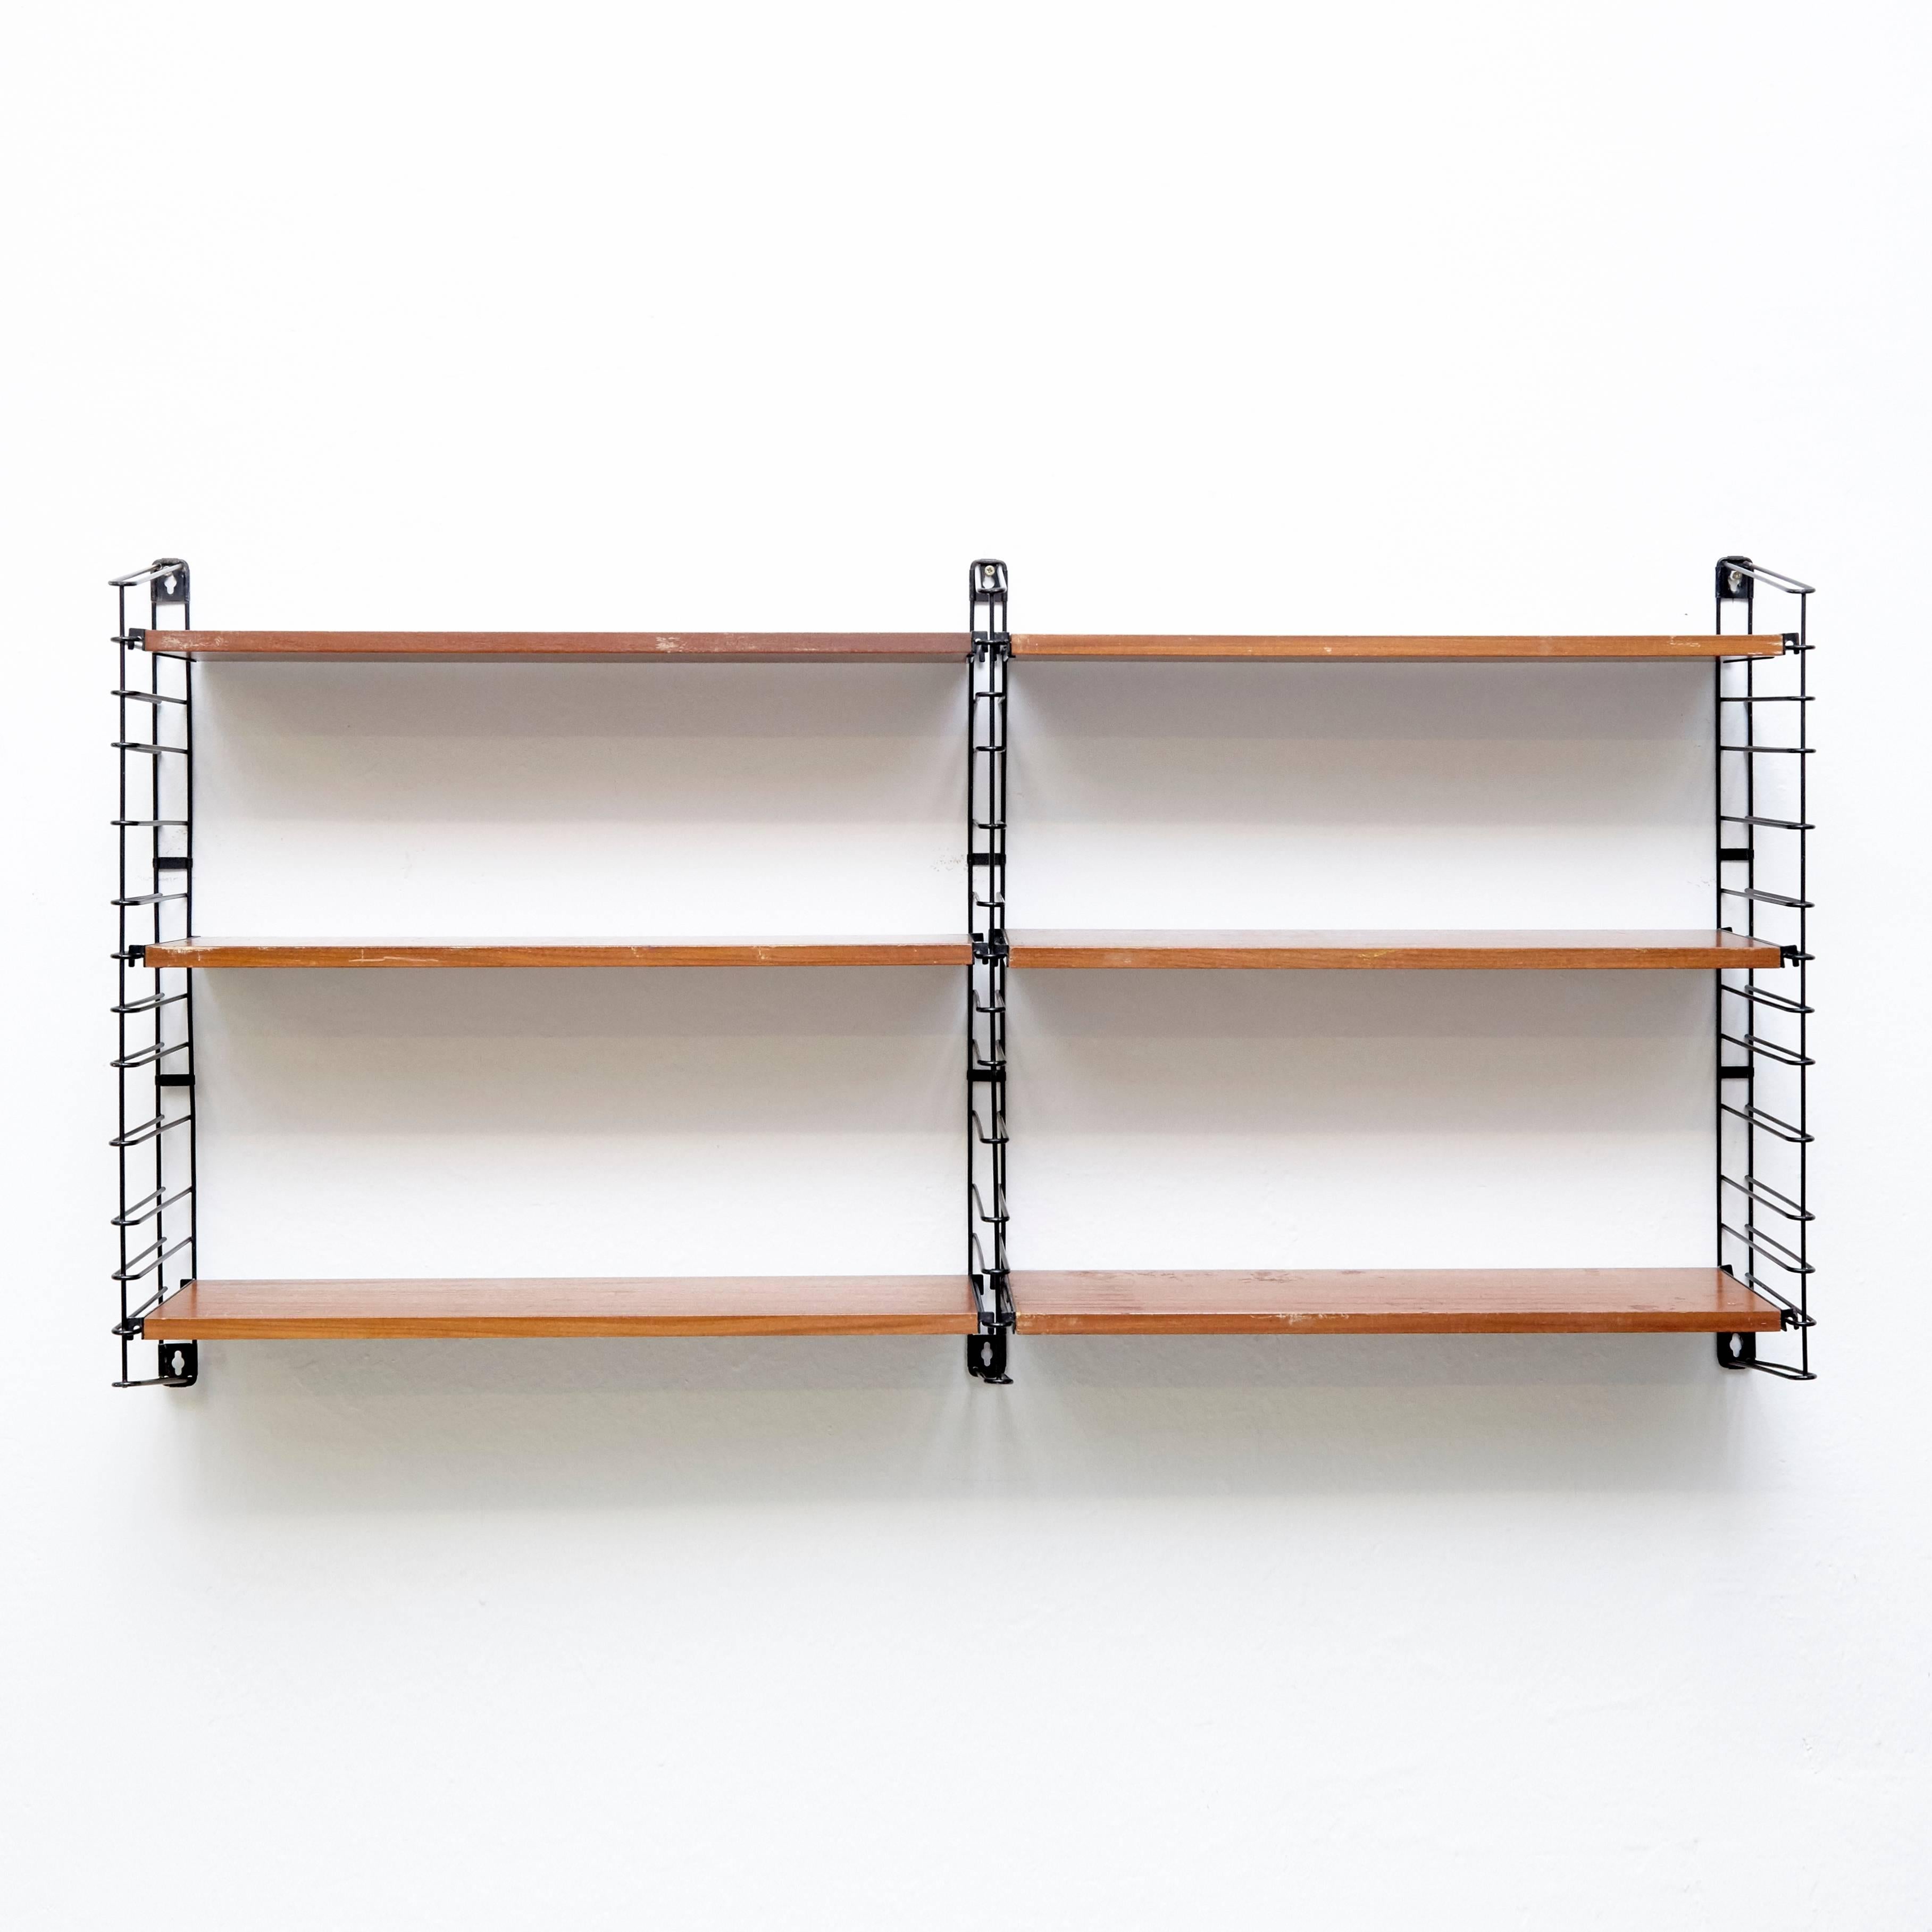 Dutch Adriaan Dekker for Tomado Two Modular Wall Hanging Shelves, 1958